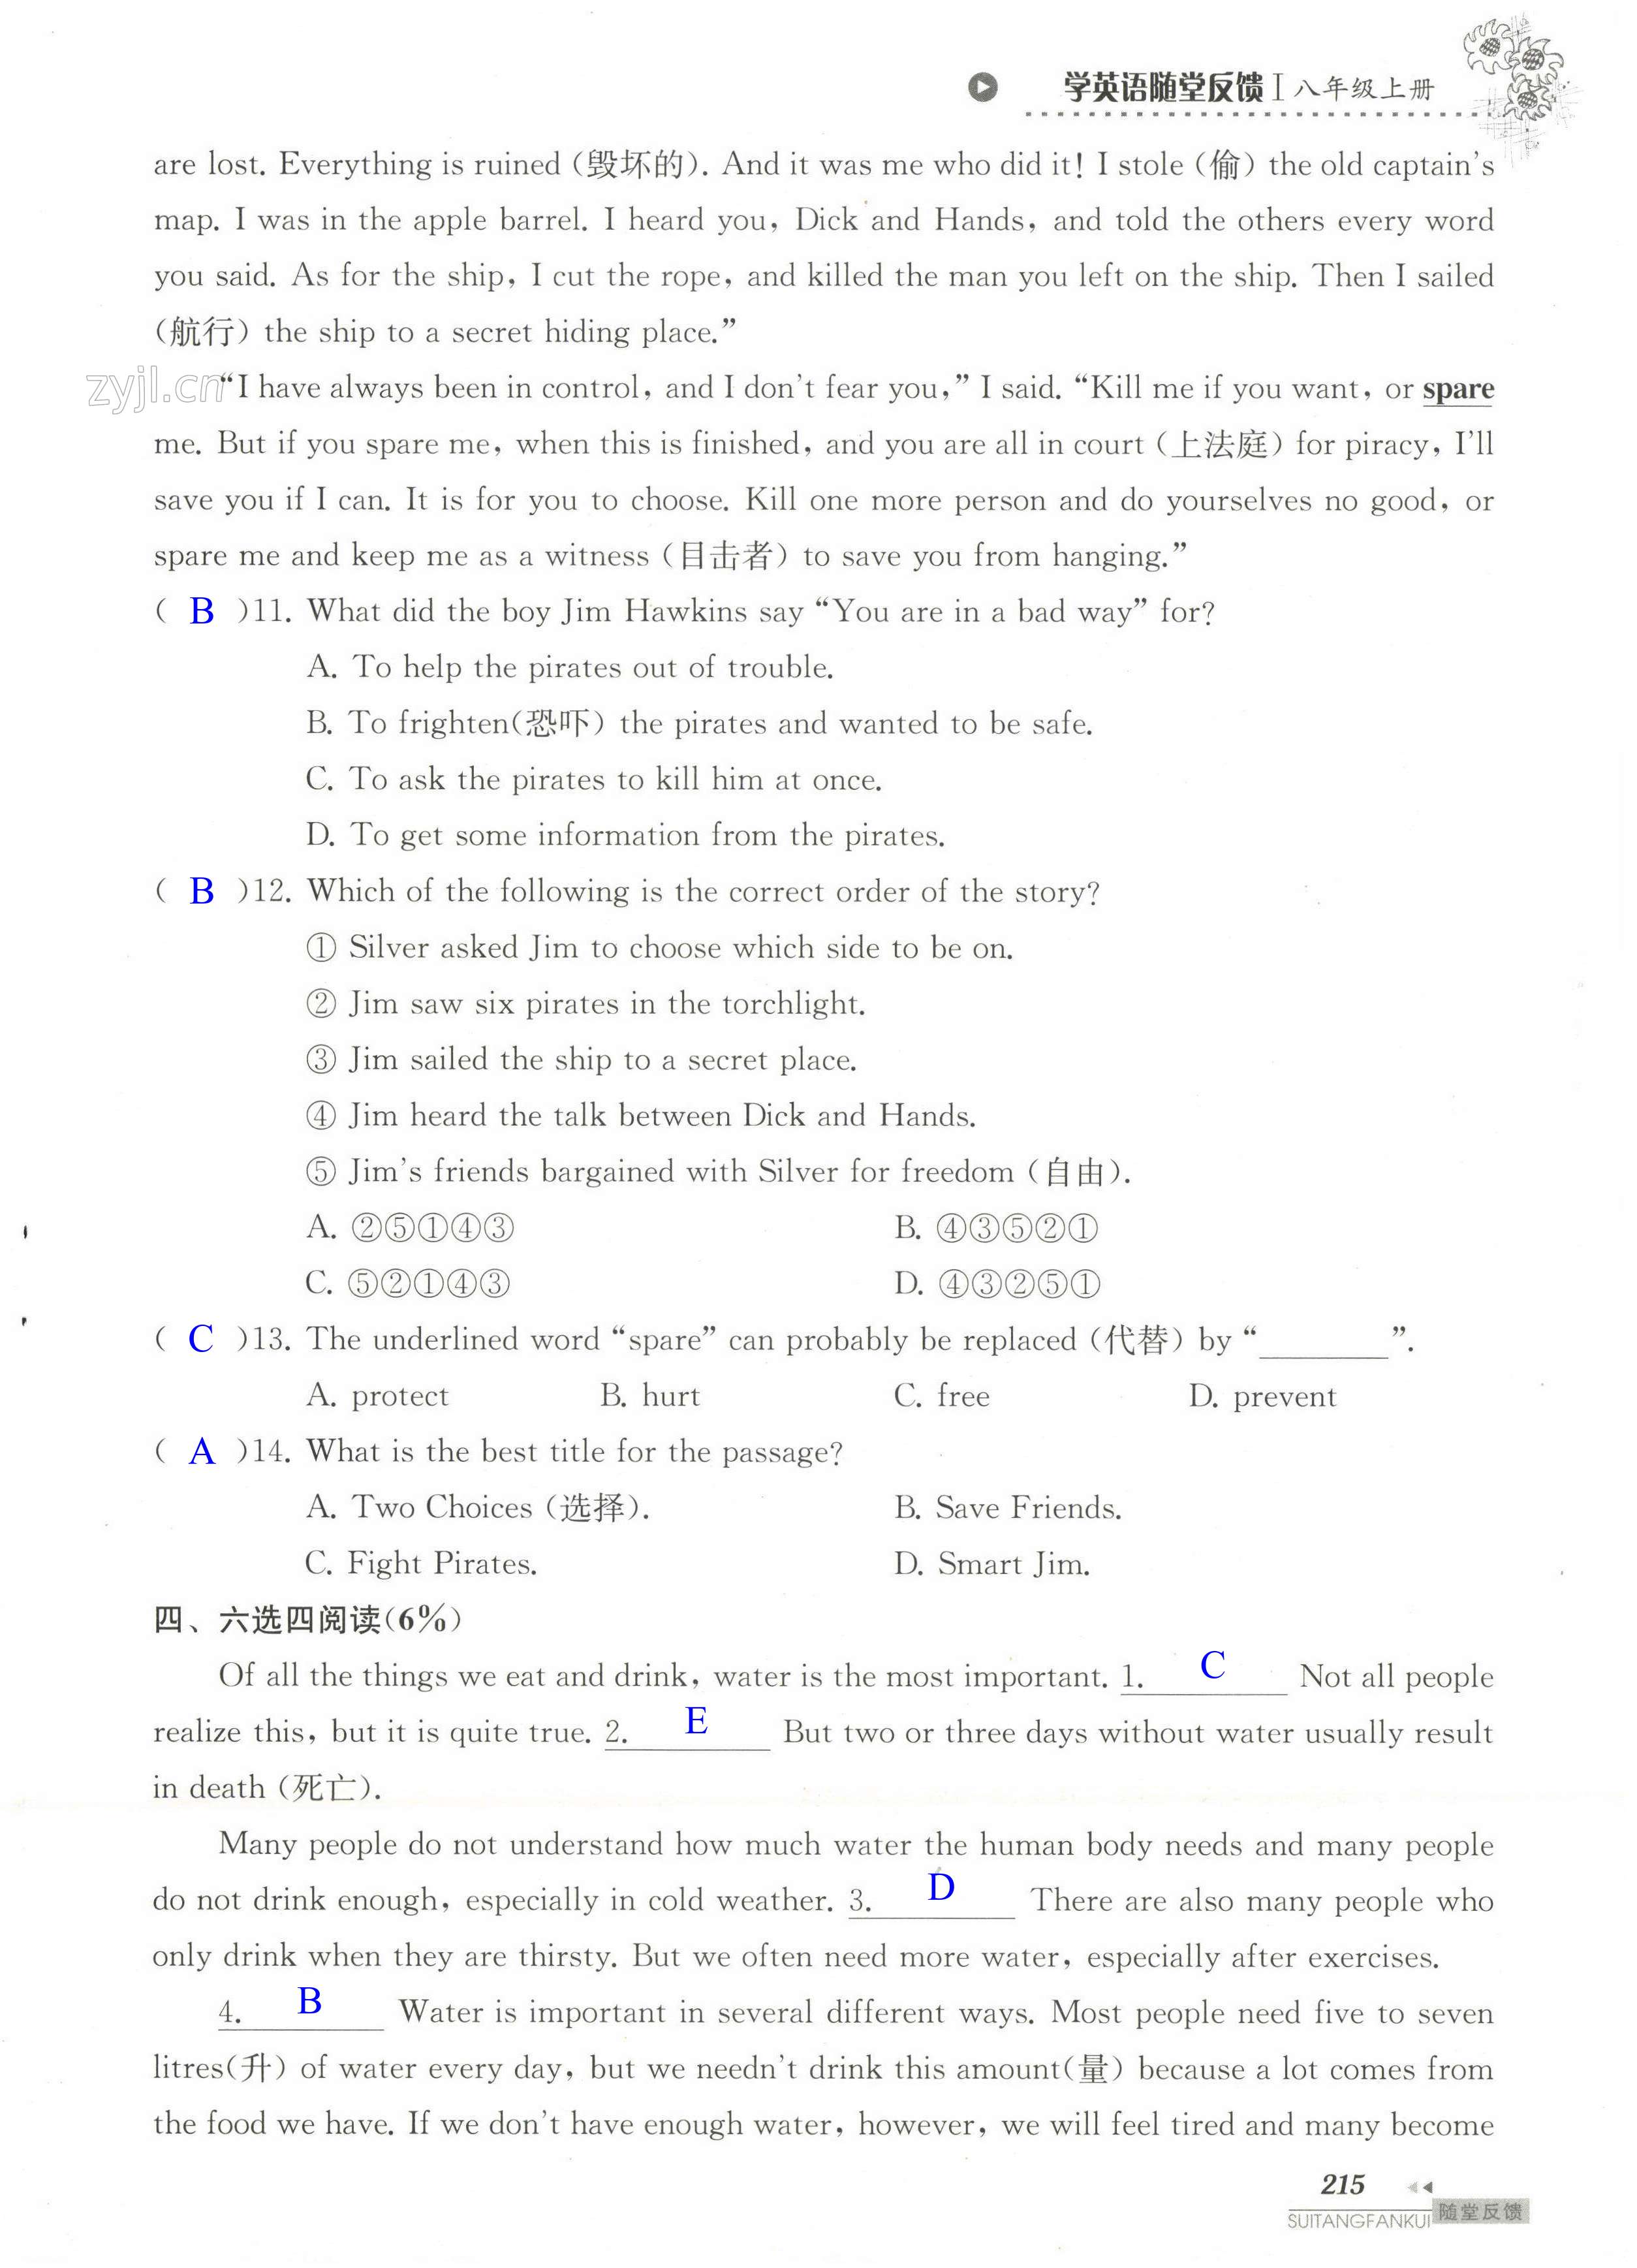 单元综合测试卷 Test for Unit 8 of 8A - 第215页